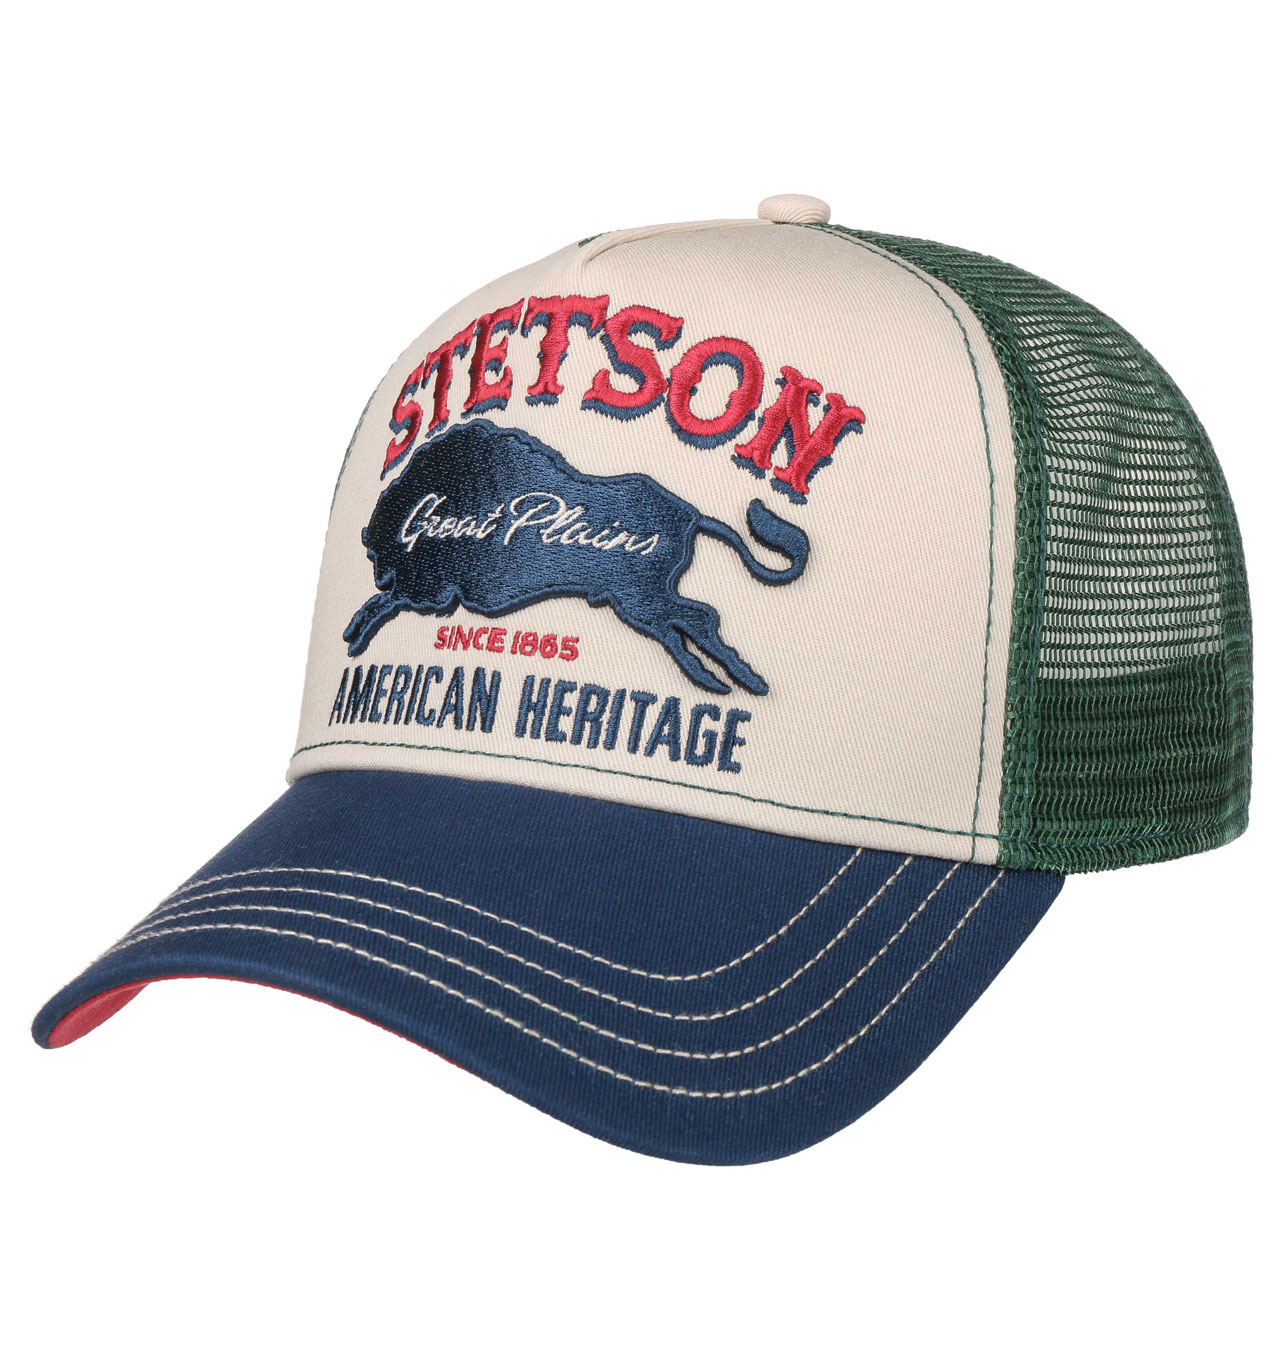 Stetson - The Great Plains Trucker Cap - Green 